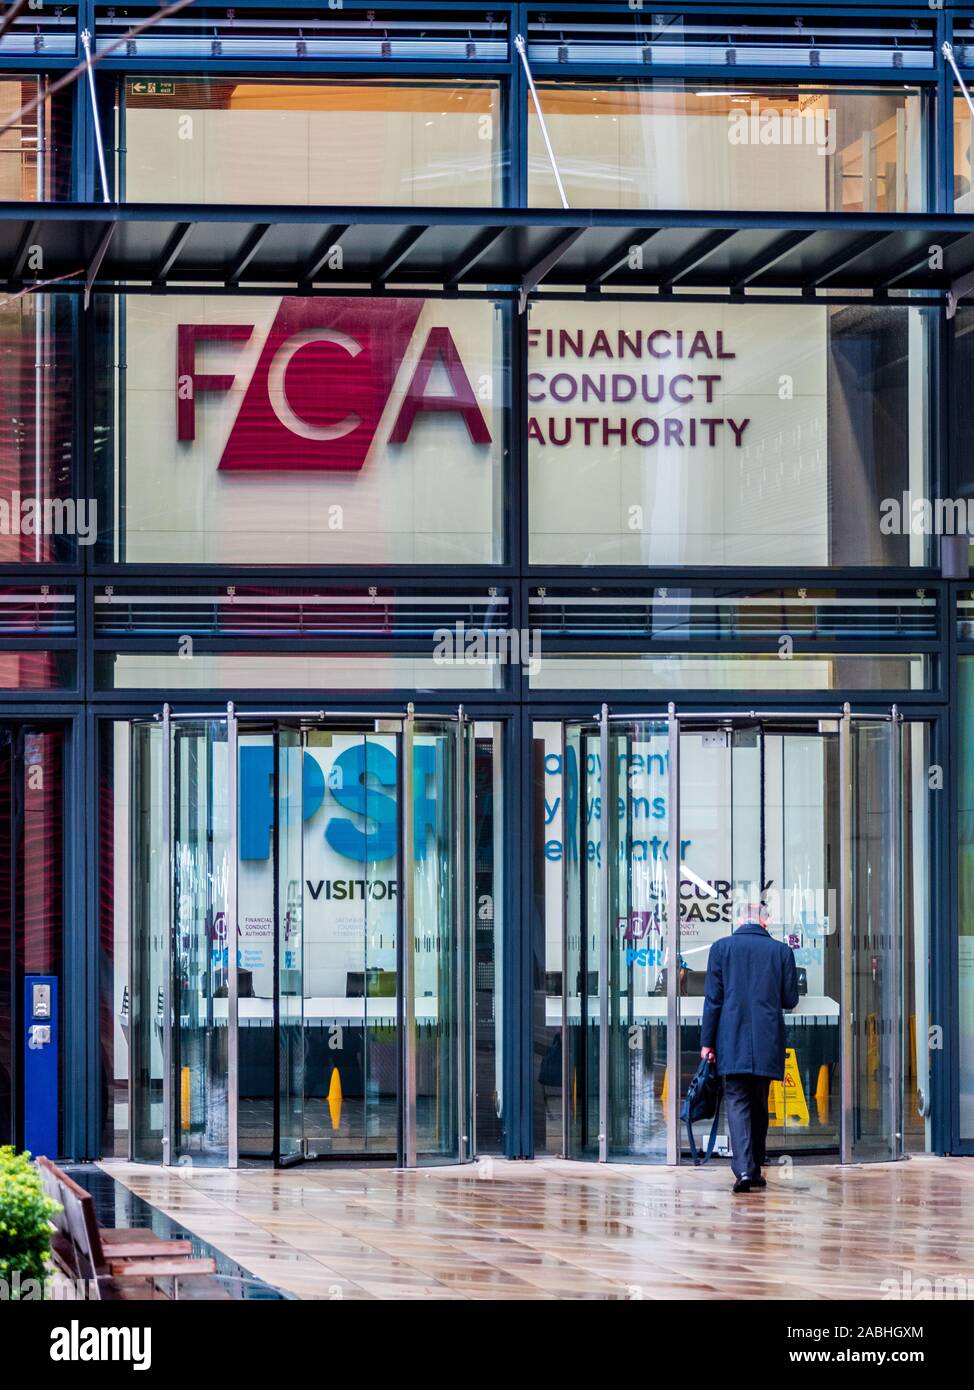 FCA Stratford - la conducta financiera competente HQ en el barrio internacional en East London - inaugurado en 2018 el arquitecto Rogers Stirk Harbour + Partners Foto de stock